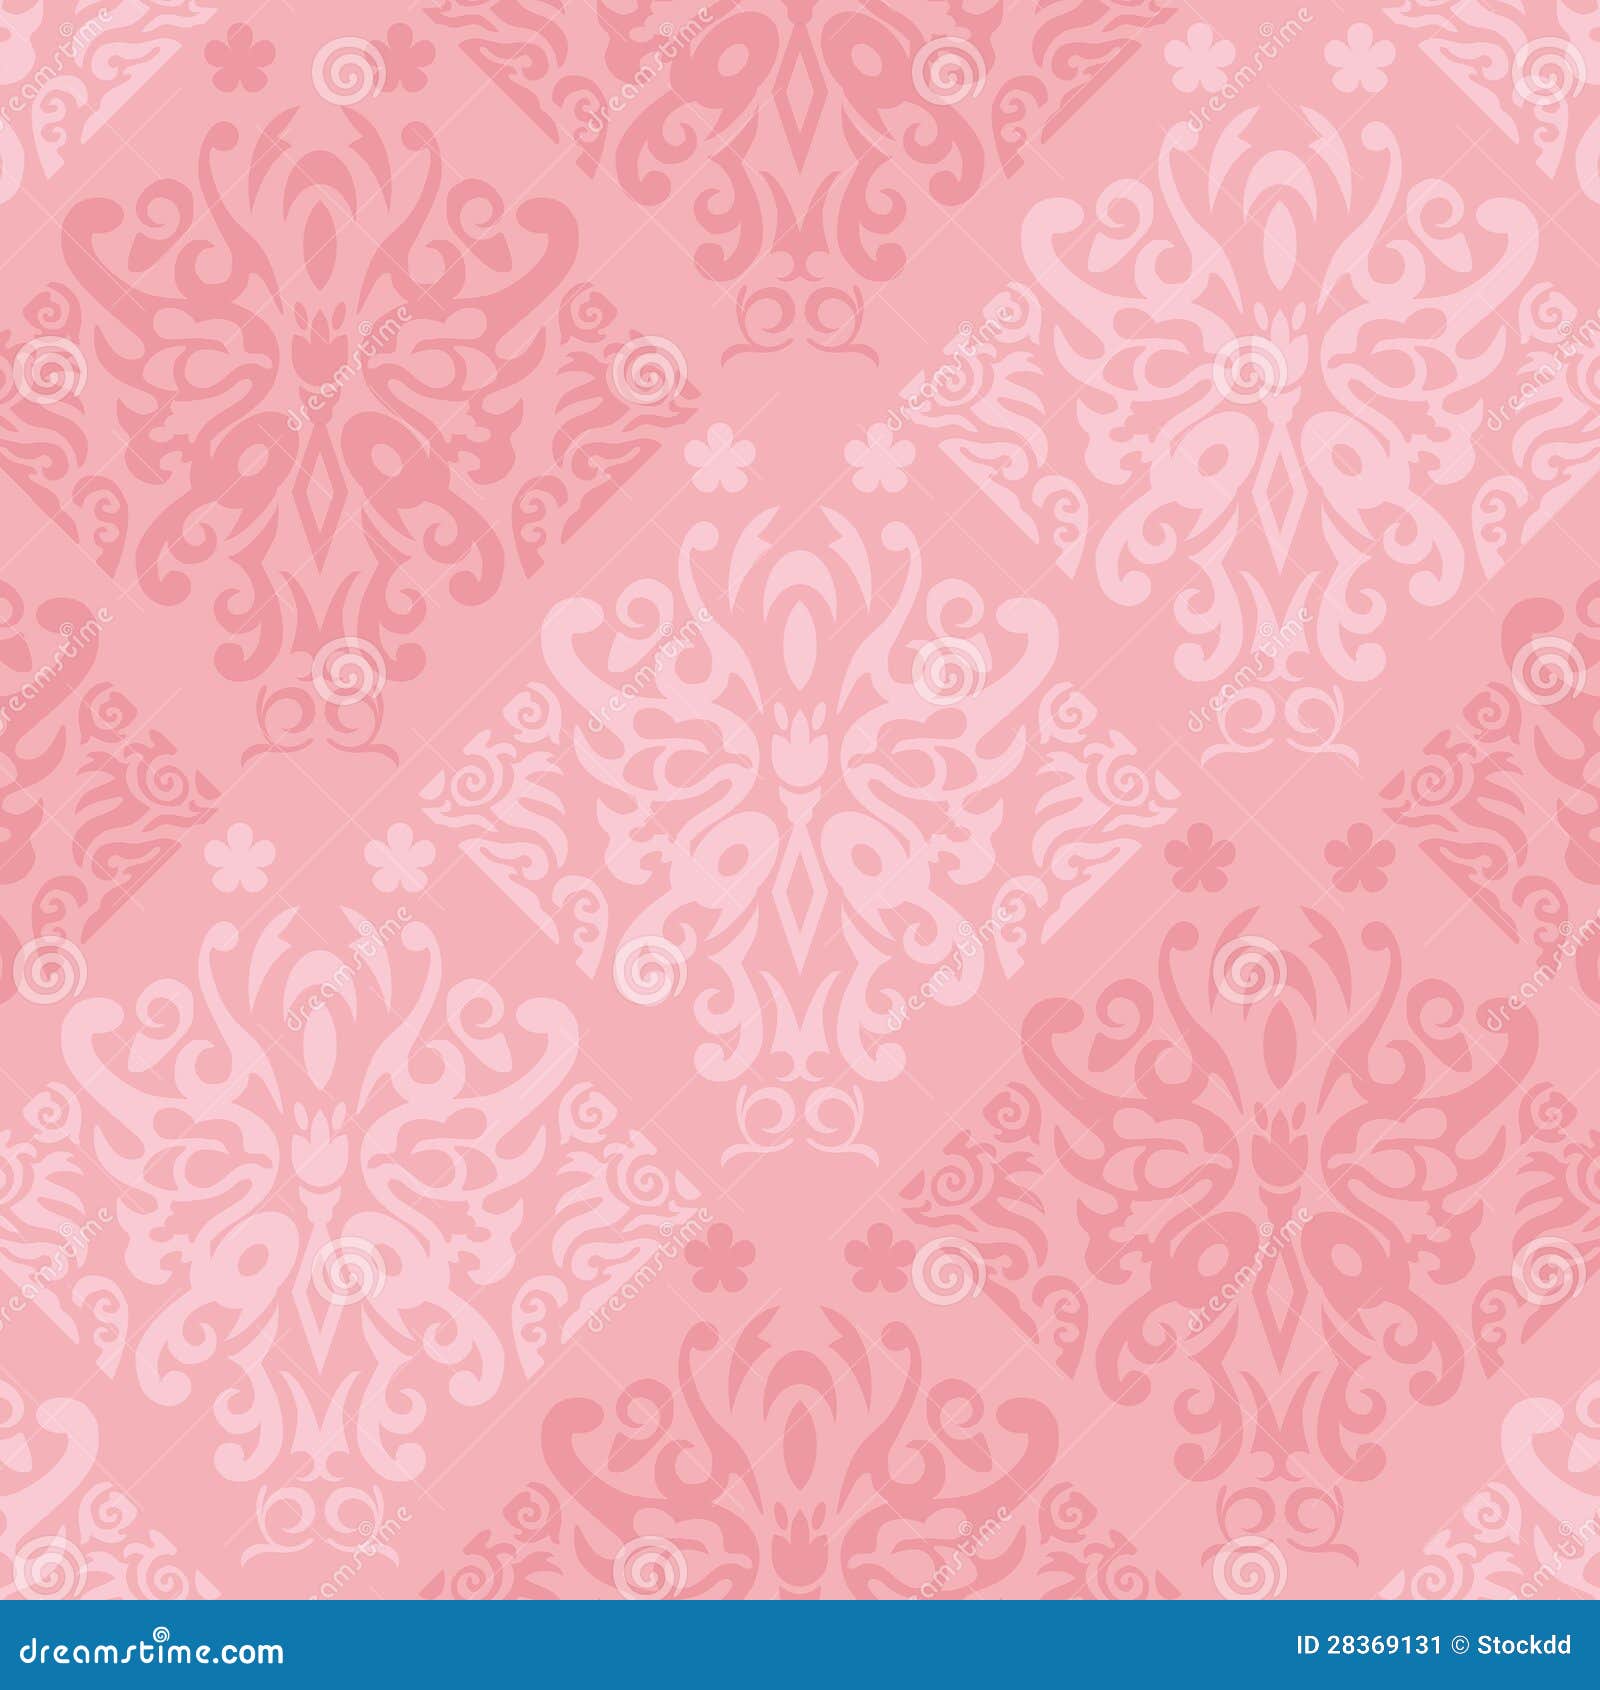 Bức tranh hoa văn hoàng gia hồng sẽ mang đến cho bạn một không gian sống rực rỡ, đẹp lộng lẫy như cung điện hoàng gia. Màu hồng nhẹ nhàng kết hợp với các chi tiết hoa văn tinh tế, cho bạn cảm giác thư thái và yên bình. Hãy để tranh làm cho không gian nhà bạn trở nên tràn đầy sức sống và sinh động.